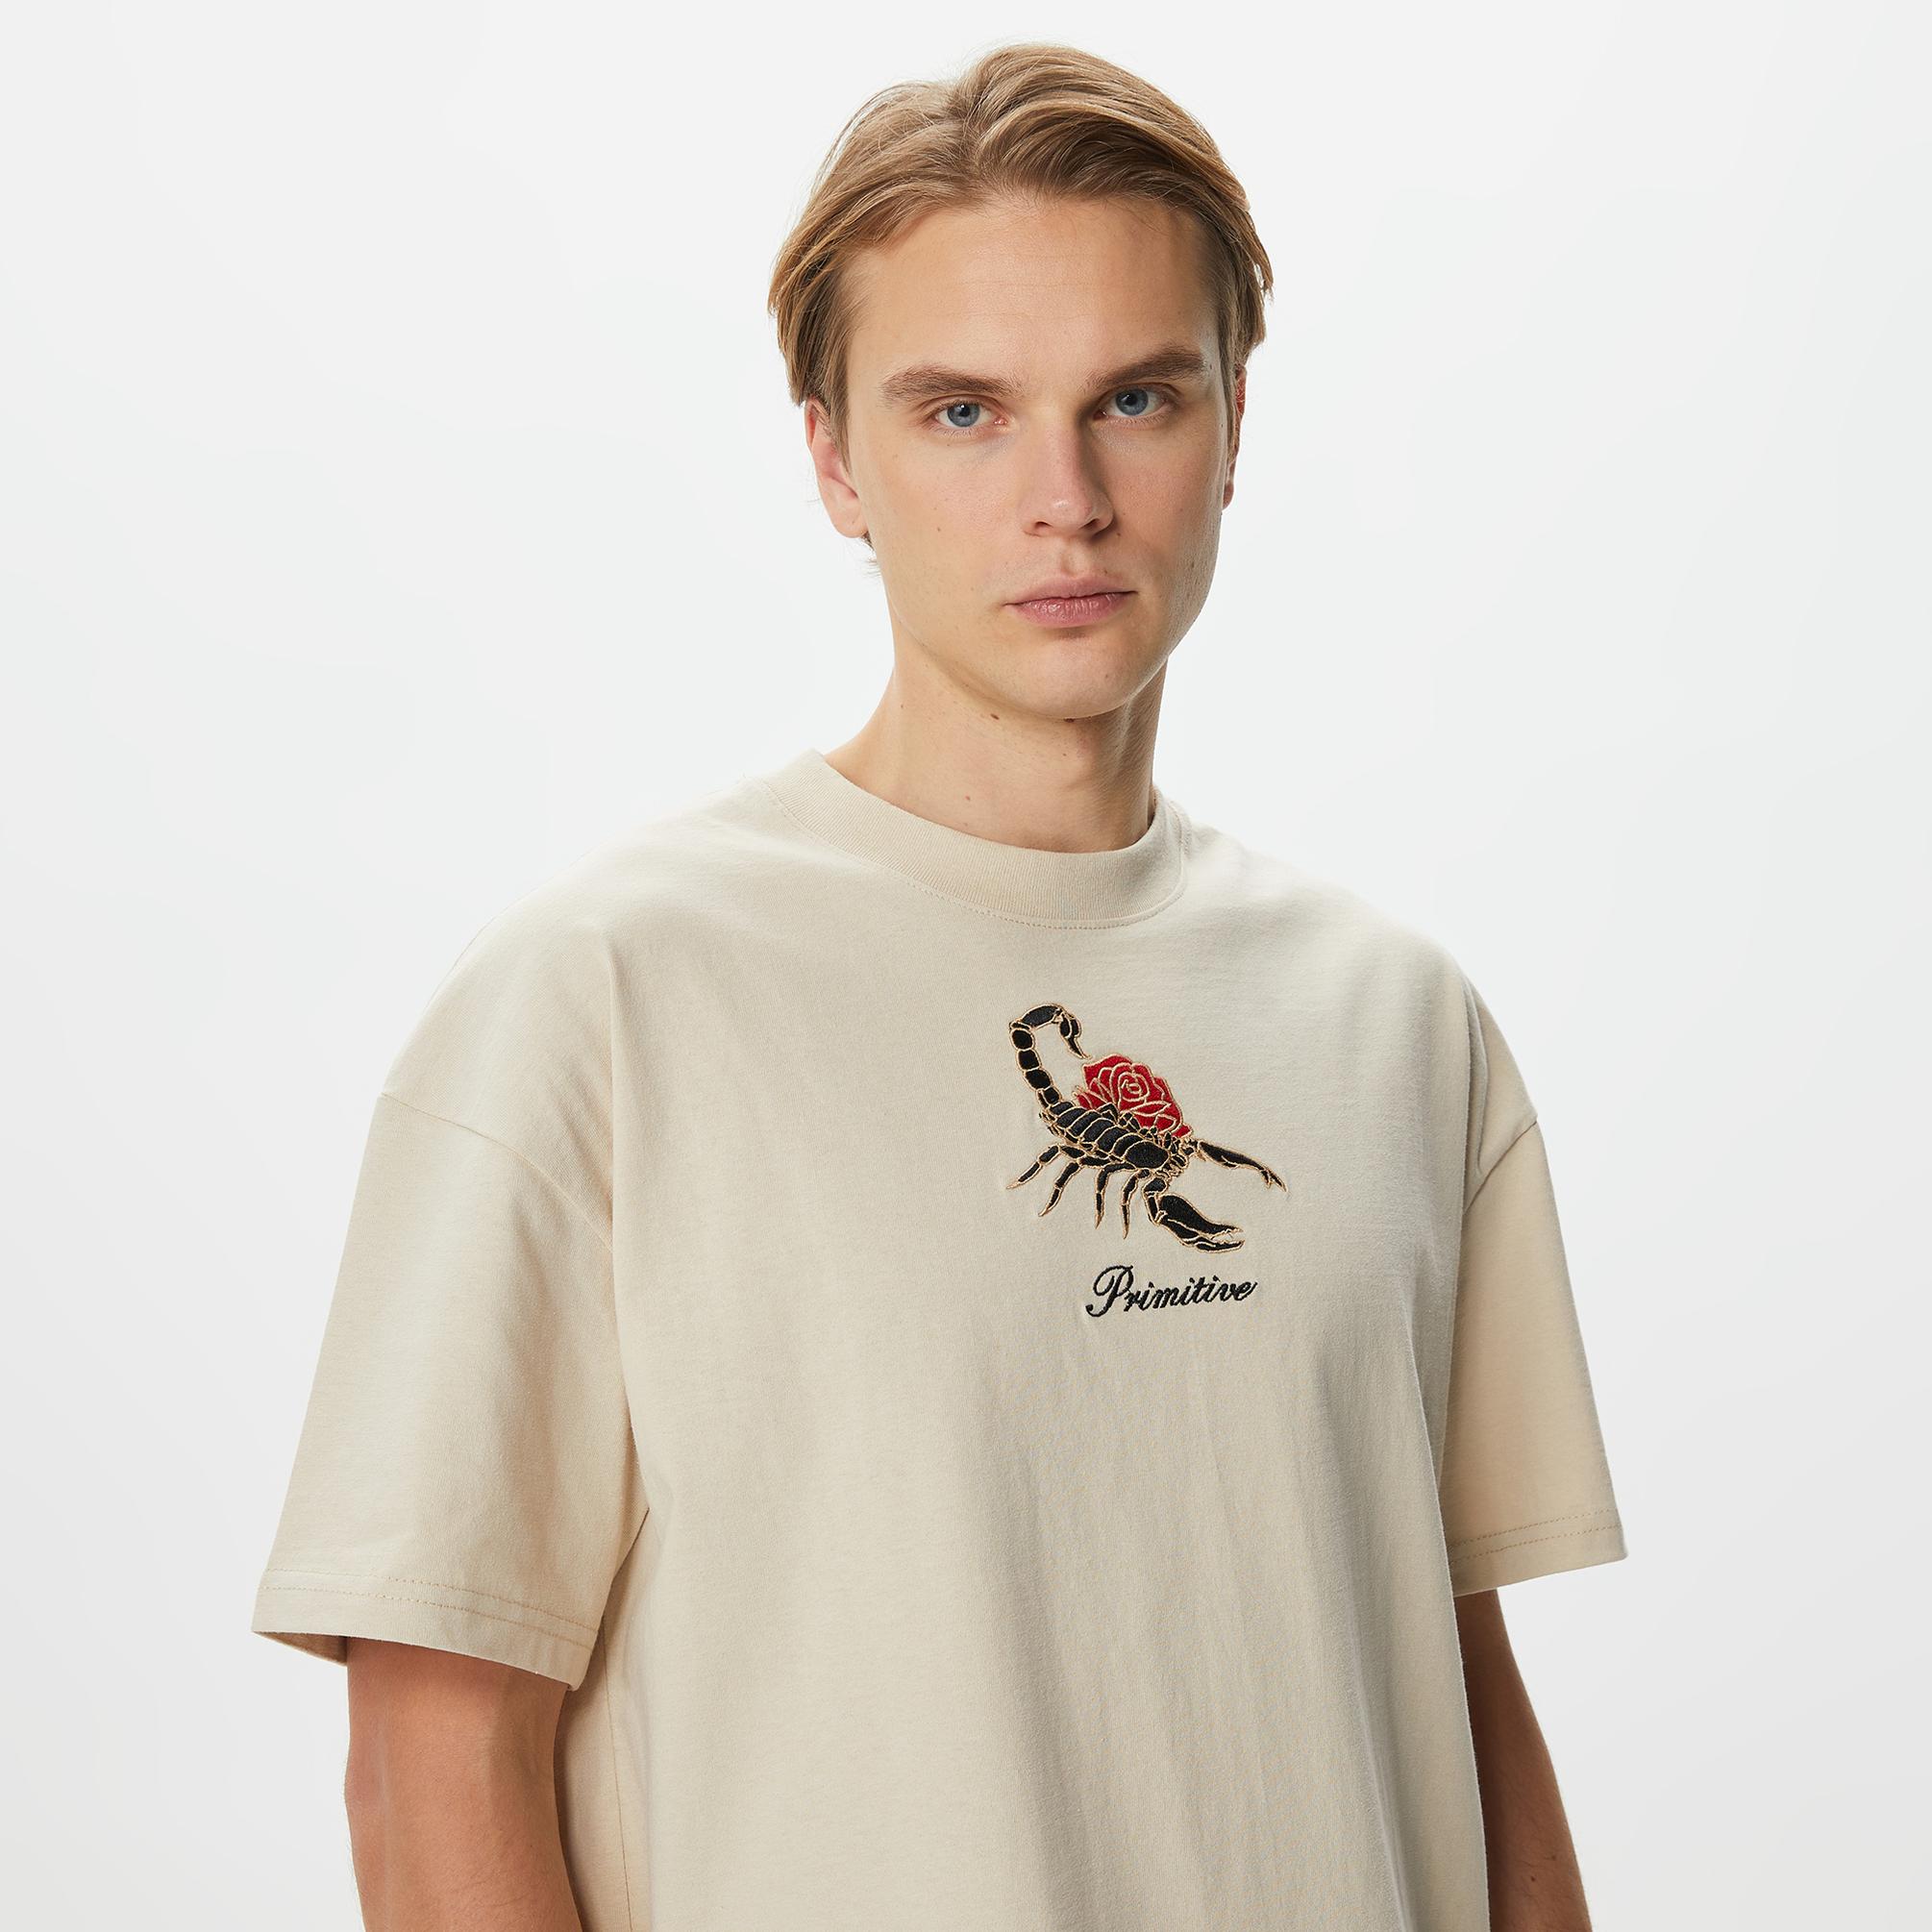  Primitive Scorpio HW Erkek Bej T-Shirt